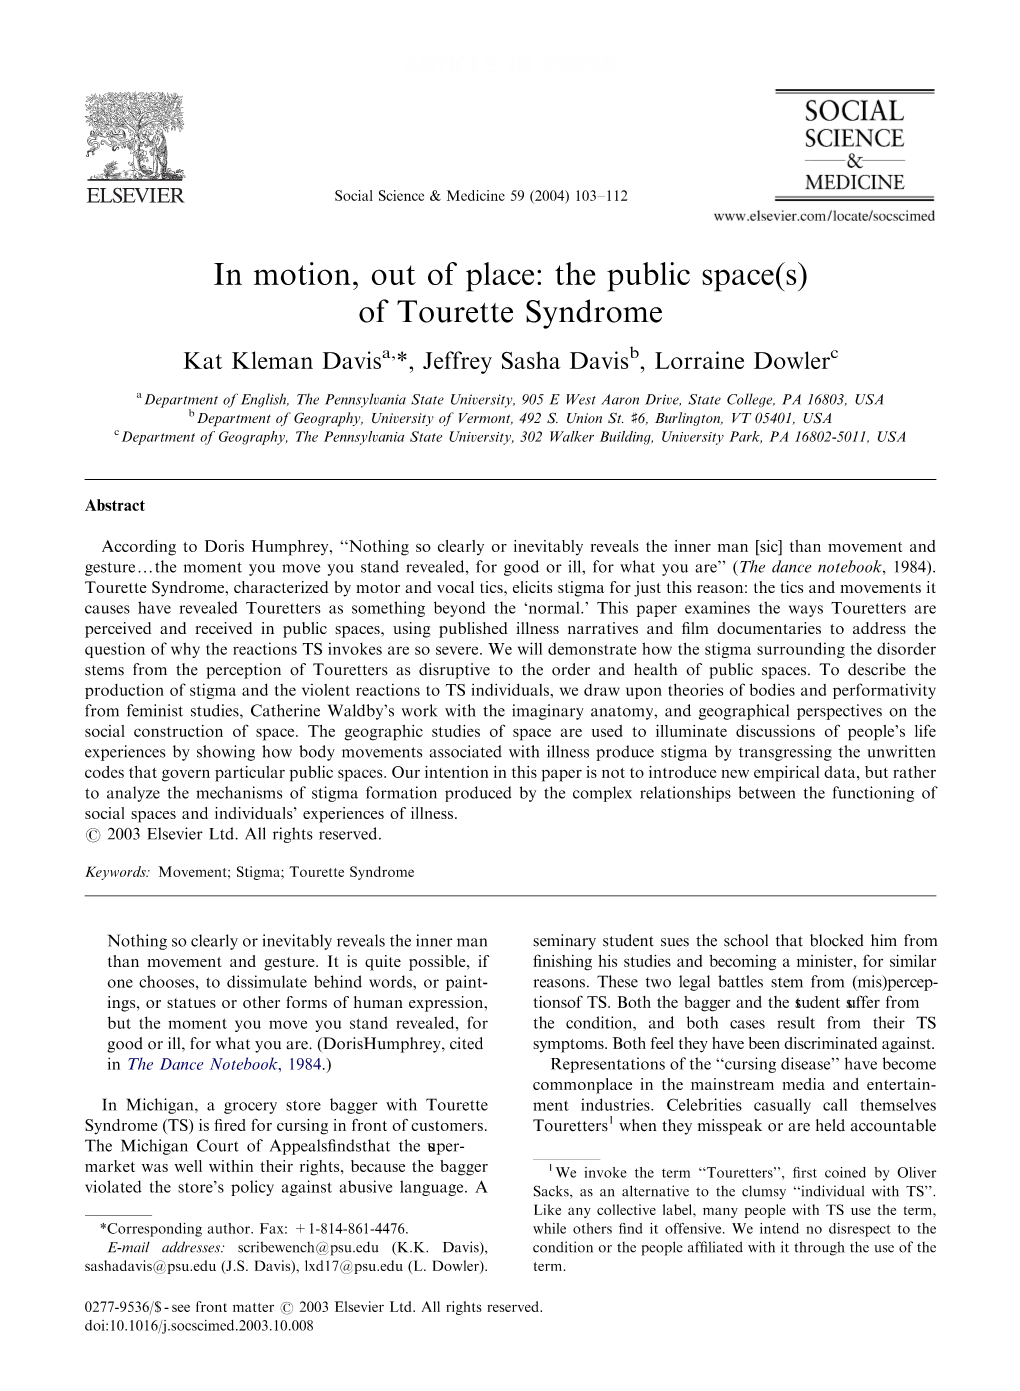 In Motion, out of Place: the Public Space(S) of Tourette Syndrome Kat Kleman Davisa,*, Jeffrey Sasha Davisb, Lorraine Dowlerc